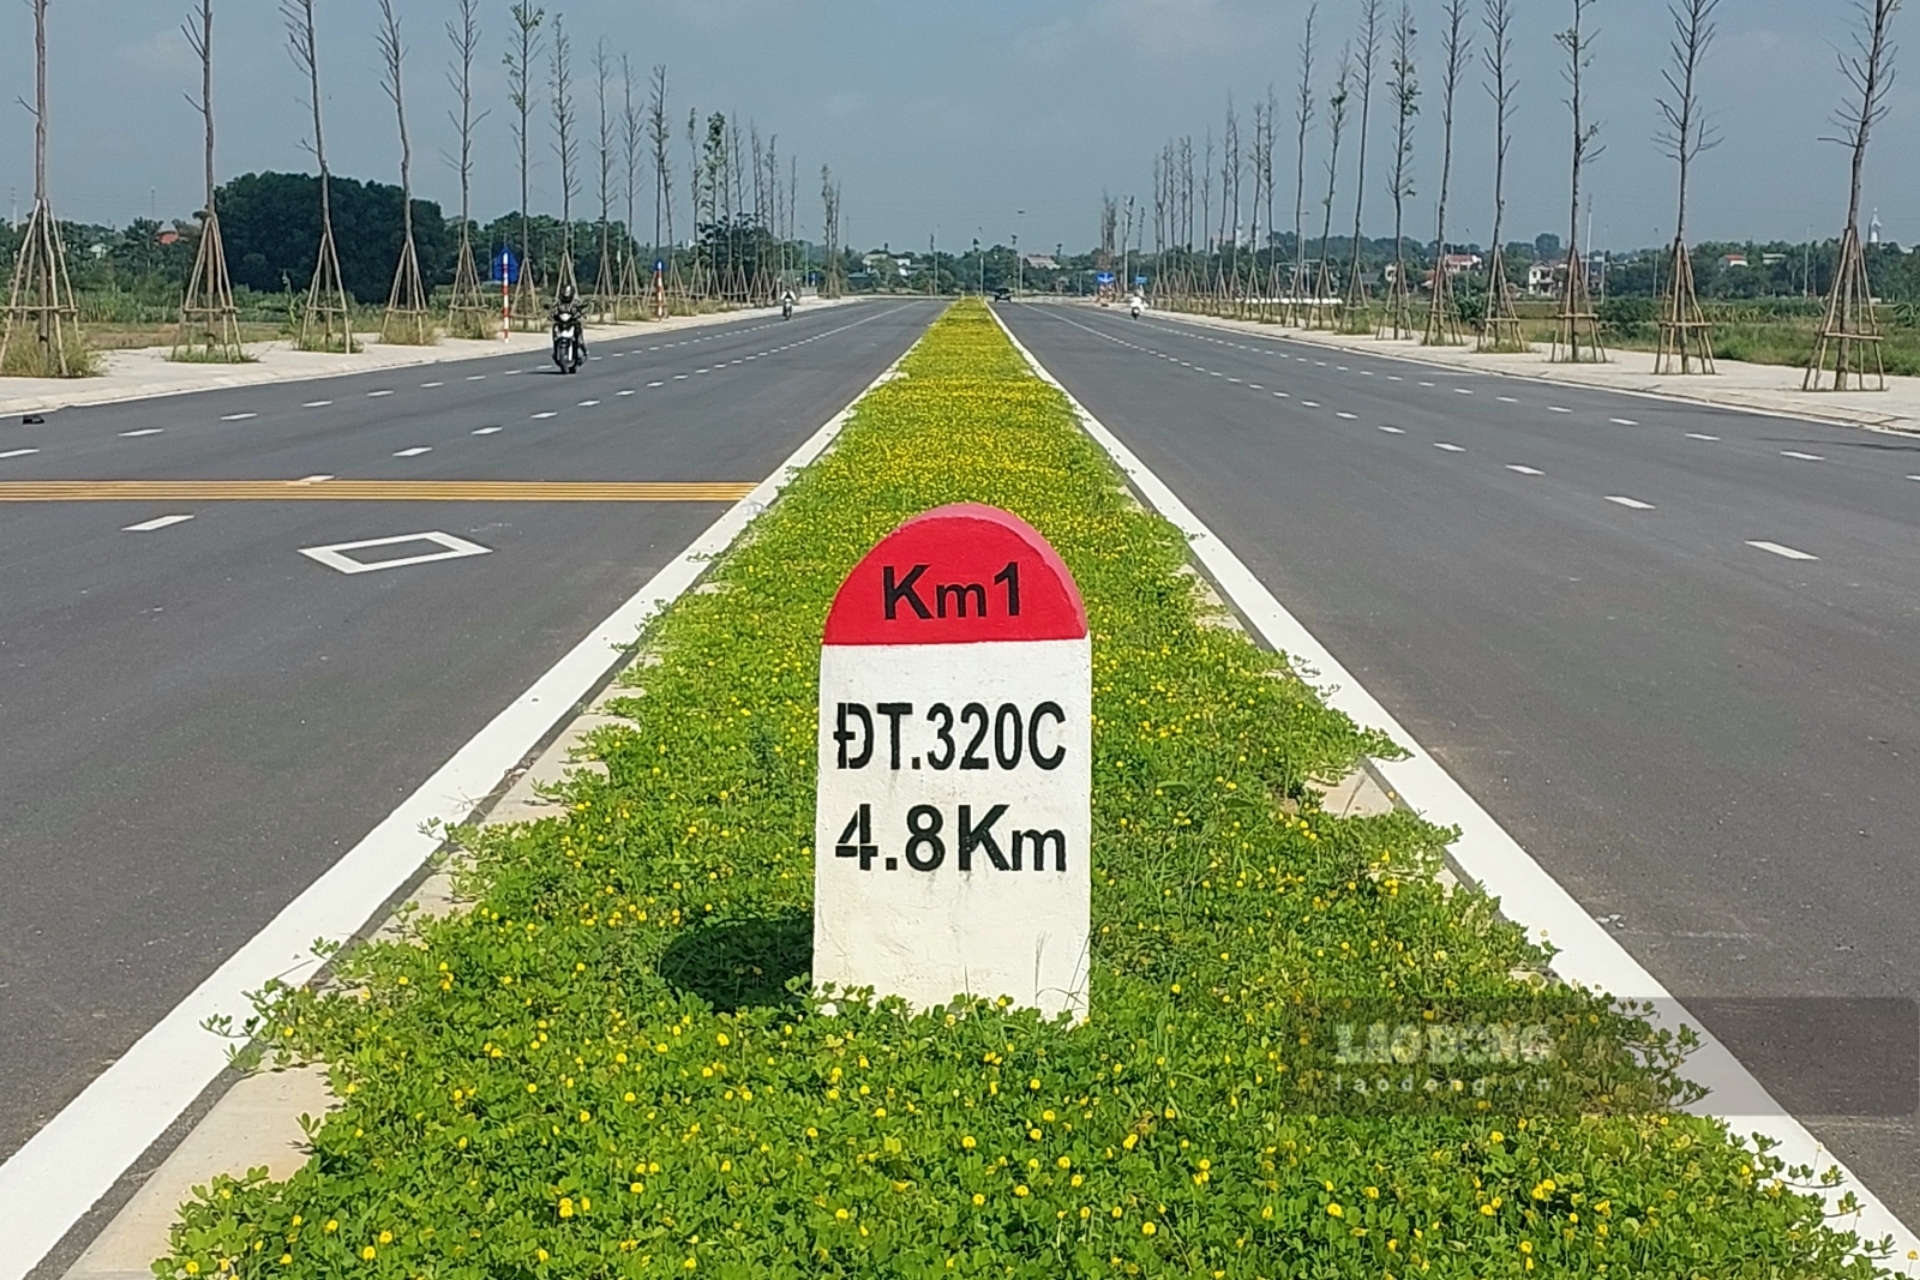 Dự án này được xây dựng sẽ hình thành tuyến đường trục đô thị mới của thị xã Phú Thọ, nâng cấp hệ thống kết cấu hạ tầng giao thông, phát triển quỹ đất hai bên đường, đáp ứng nhu cầu đi lại của người dân, góp phần thúc đấy phát triển kinh tế -xã hội...